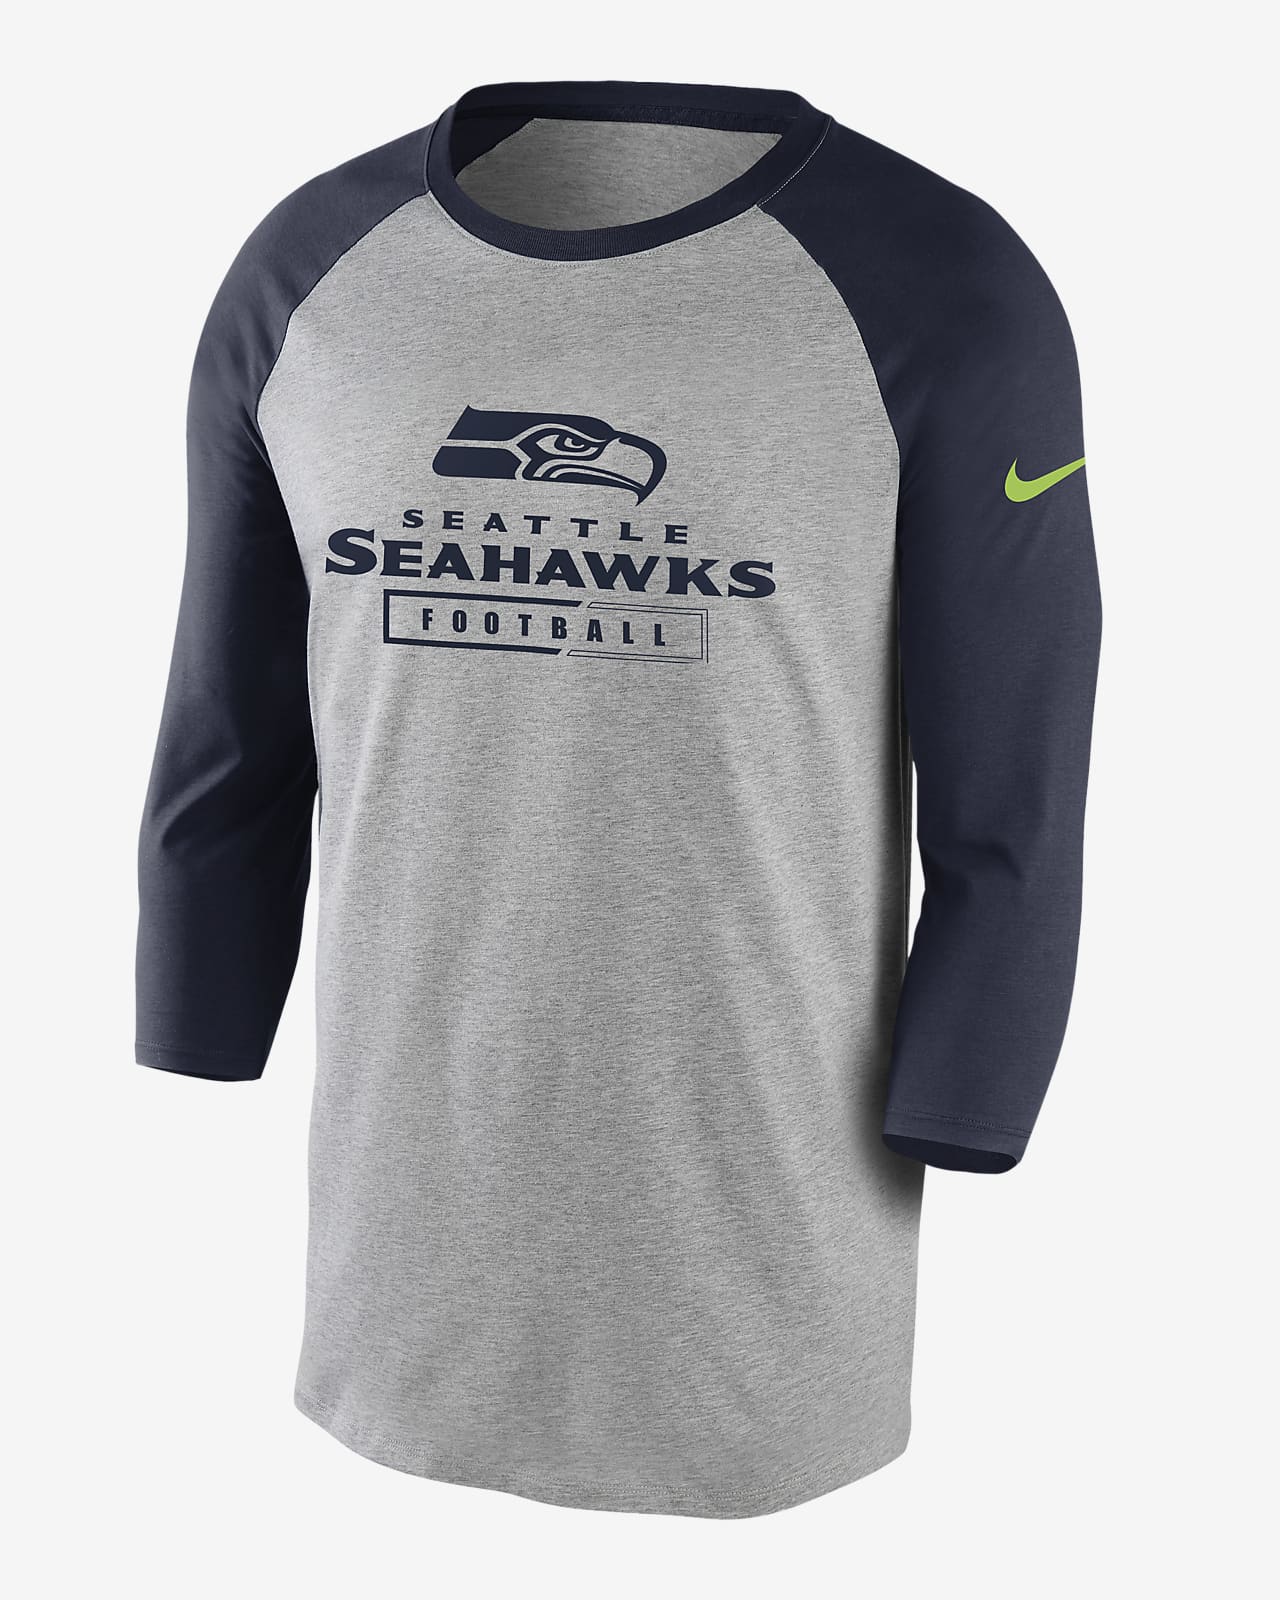 seahawks nike shirt